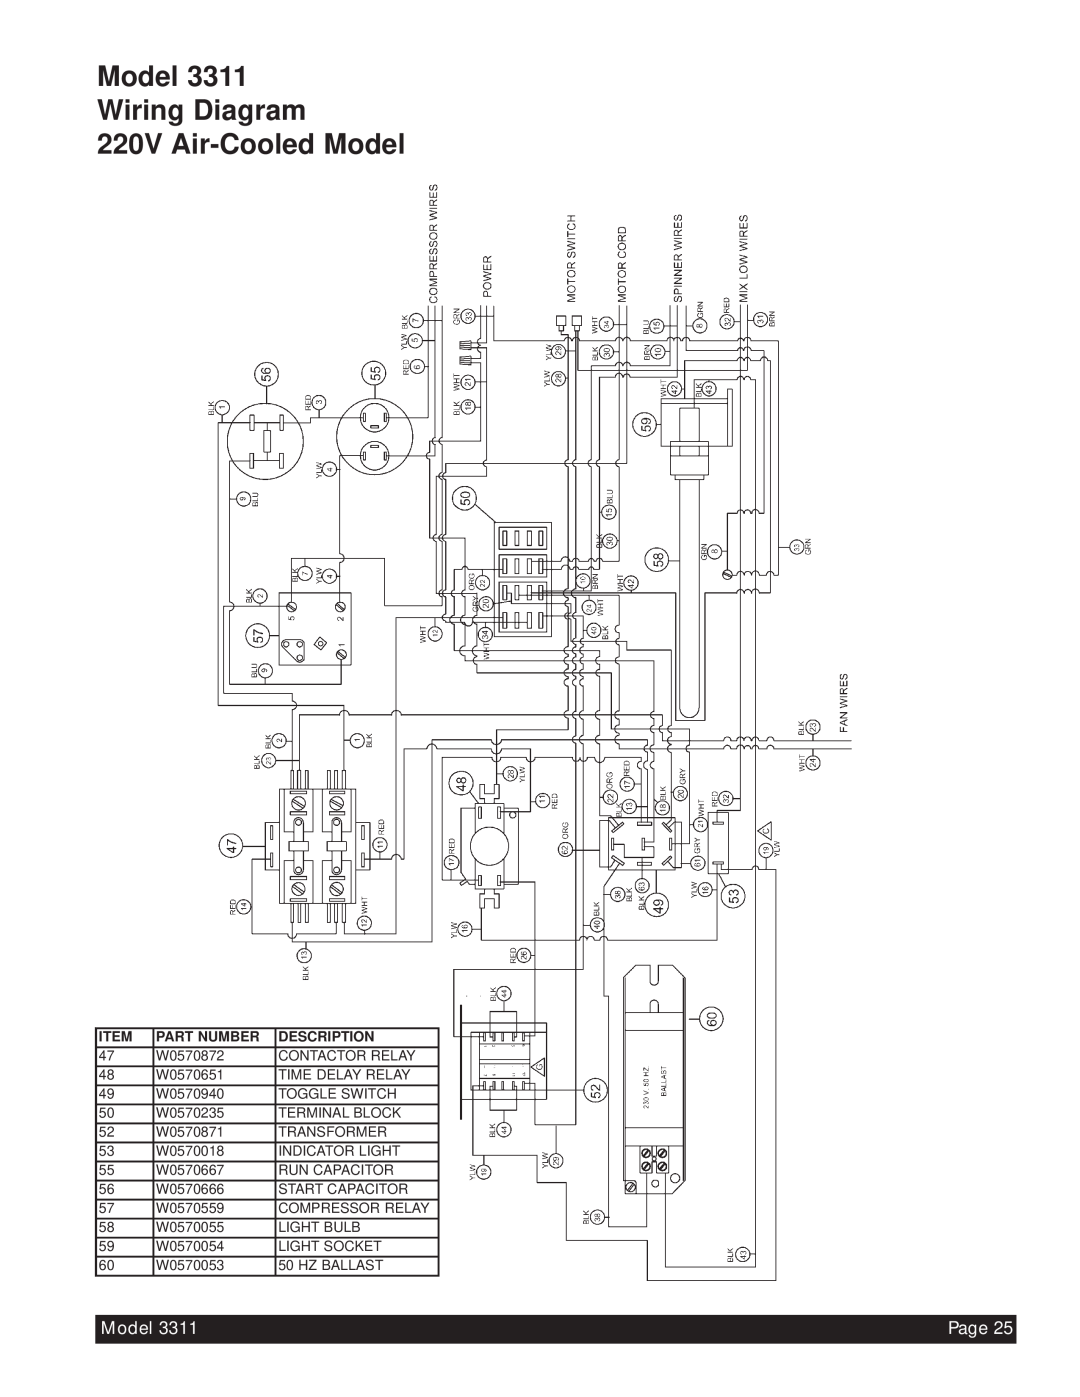 Beverage-Air 3311 manual Model Wiring Diagram 220V Air-CooledModel, Page, Part Number, Description 